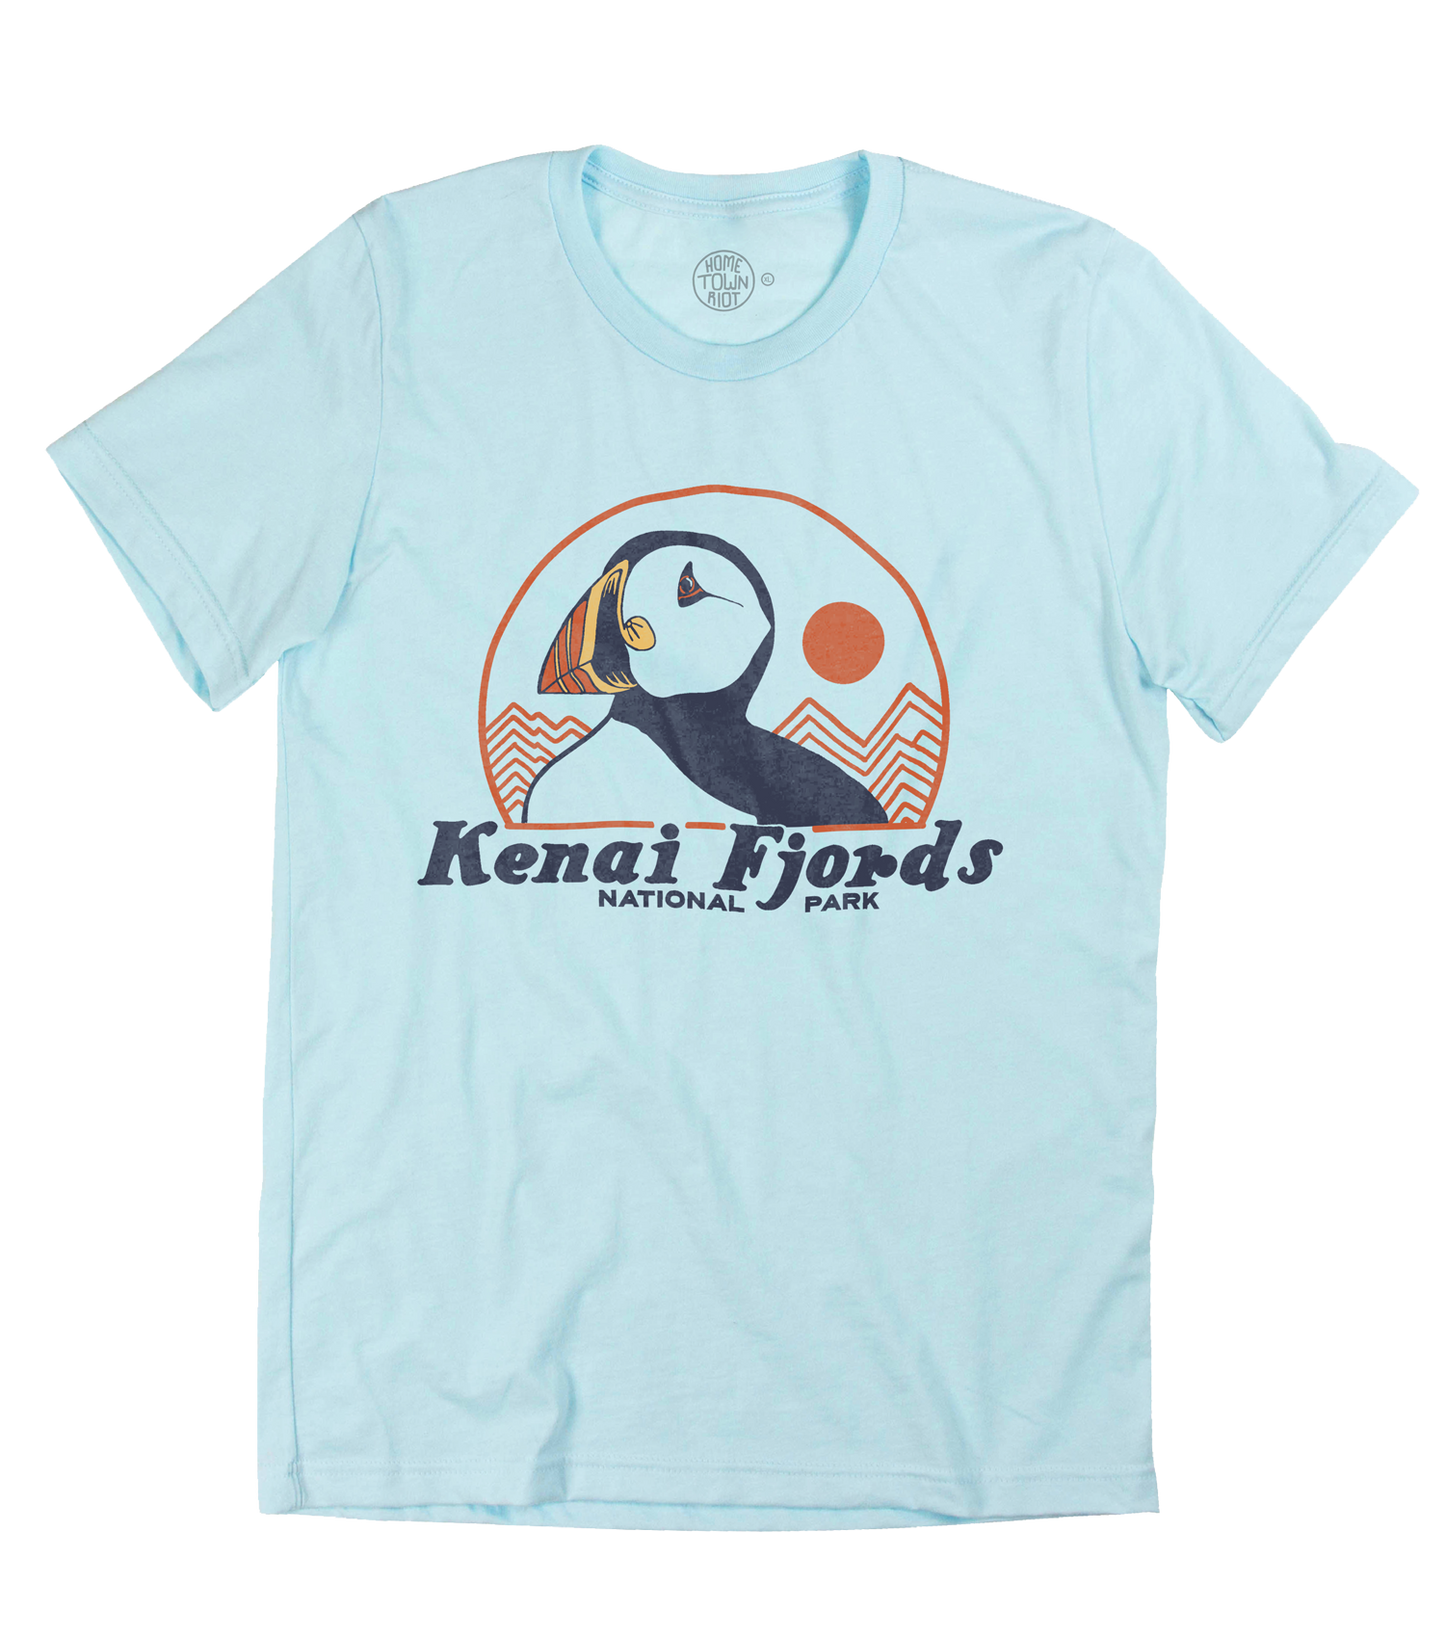 Kenai Fjords National Park Shirt